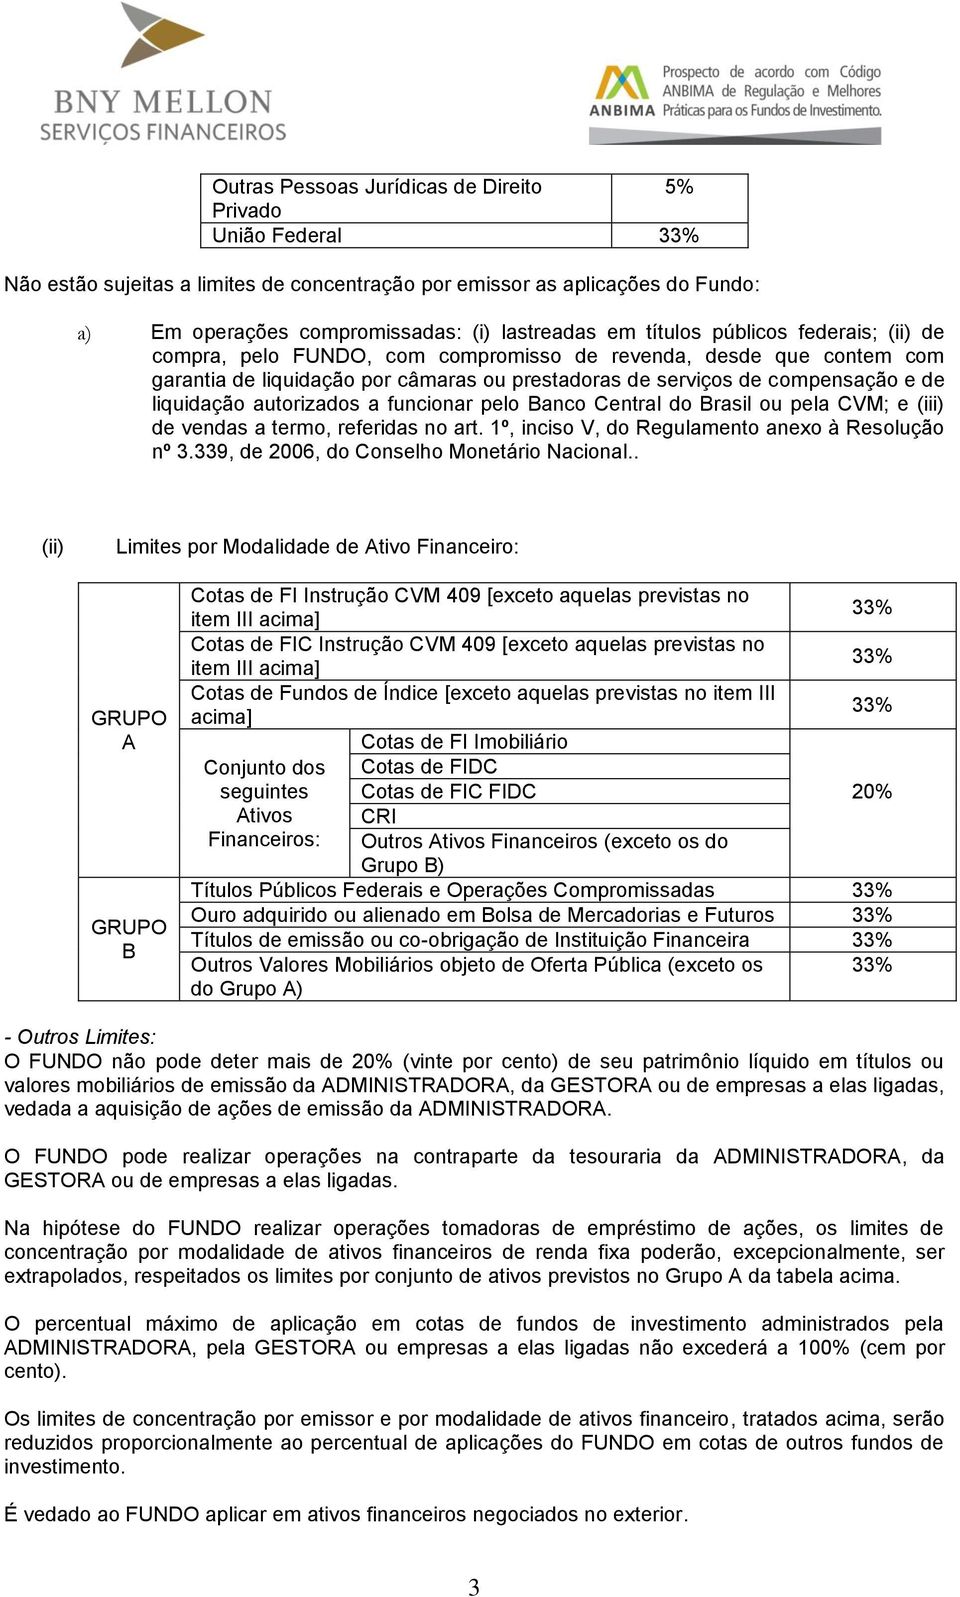 autorizados a funcionar pelo Banco Central do Brasil ou pela CVM; e (iii) de vendas a termo, referidas no art. 1º, inciso V, do Regulamento anexo à Resolução nº 3.